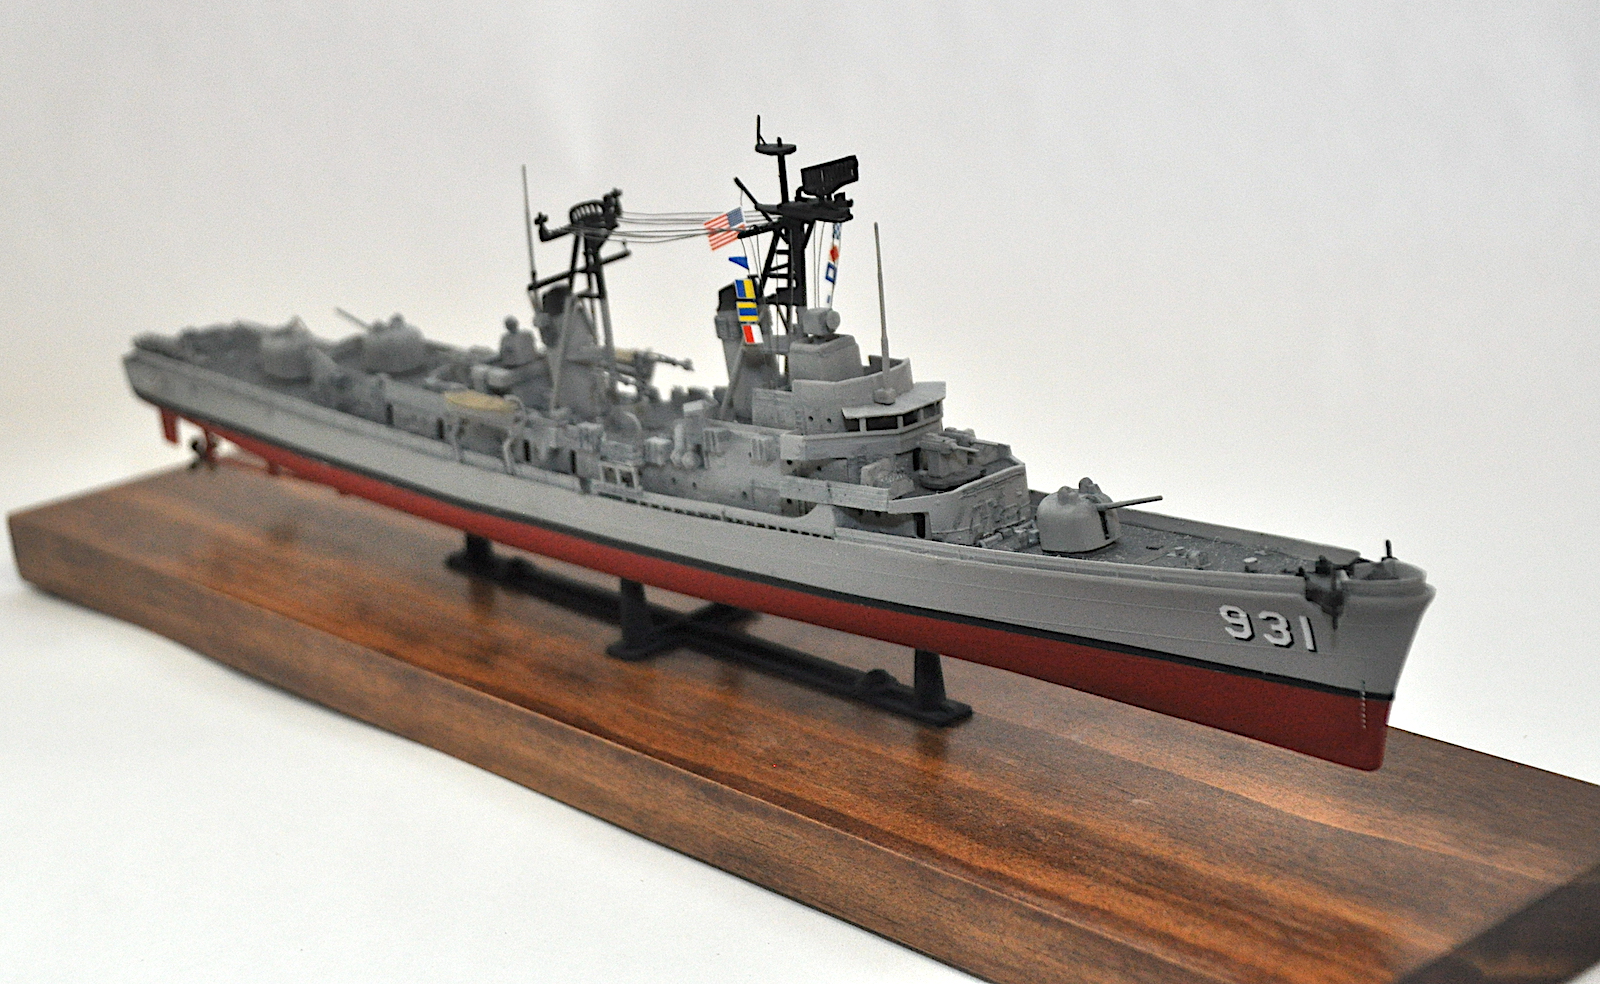 ATLANTIS MODELS USS FORREST SHERMAN DESTROYER 1/320 SCALE MODEL KIT 